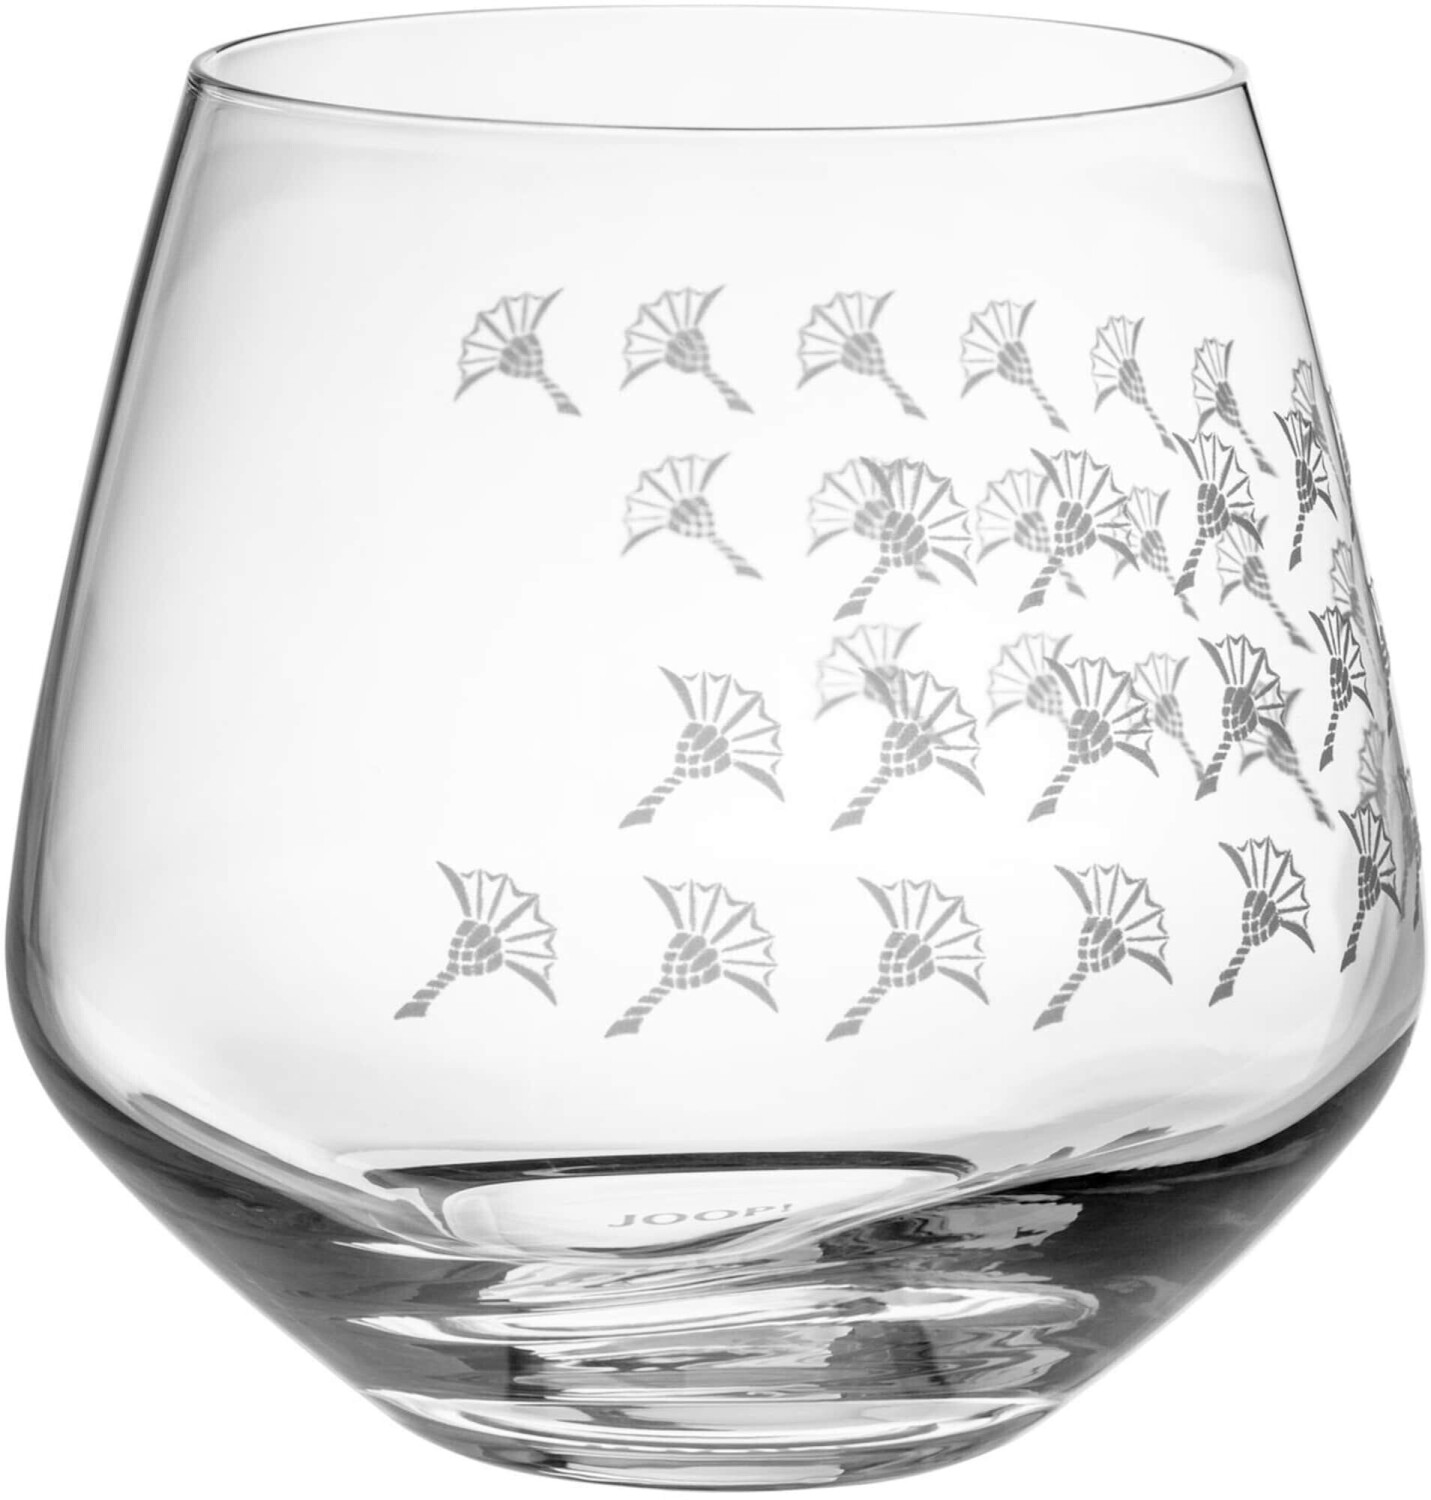 | Faded Wasserglas Joop! Preisvergleich 2-teilig ab Cornflower 390 ml 24,90 € bei